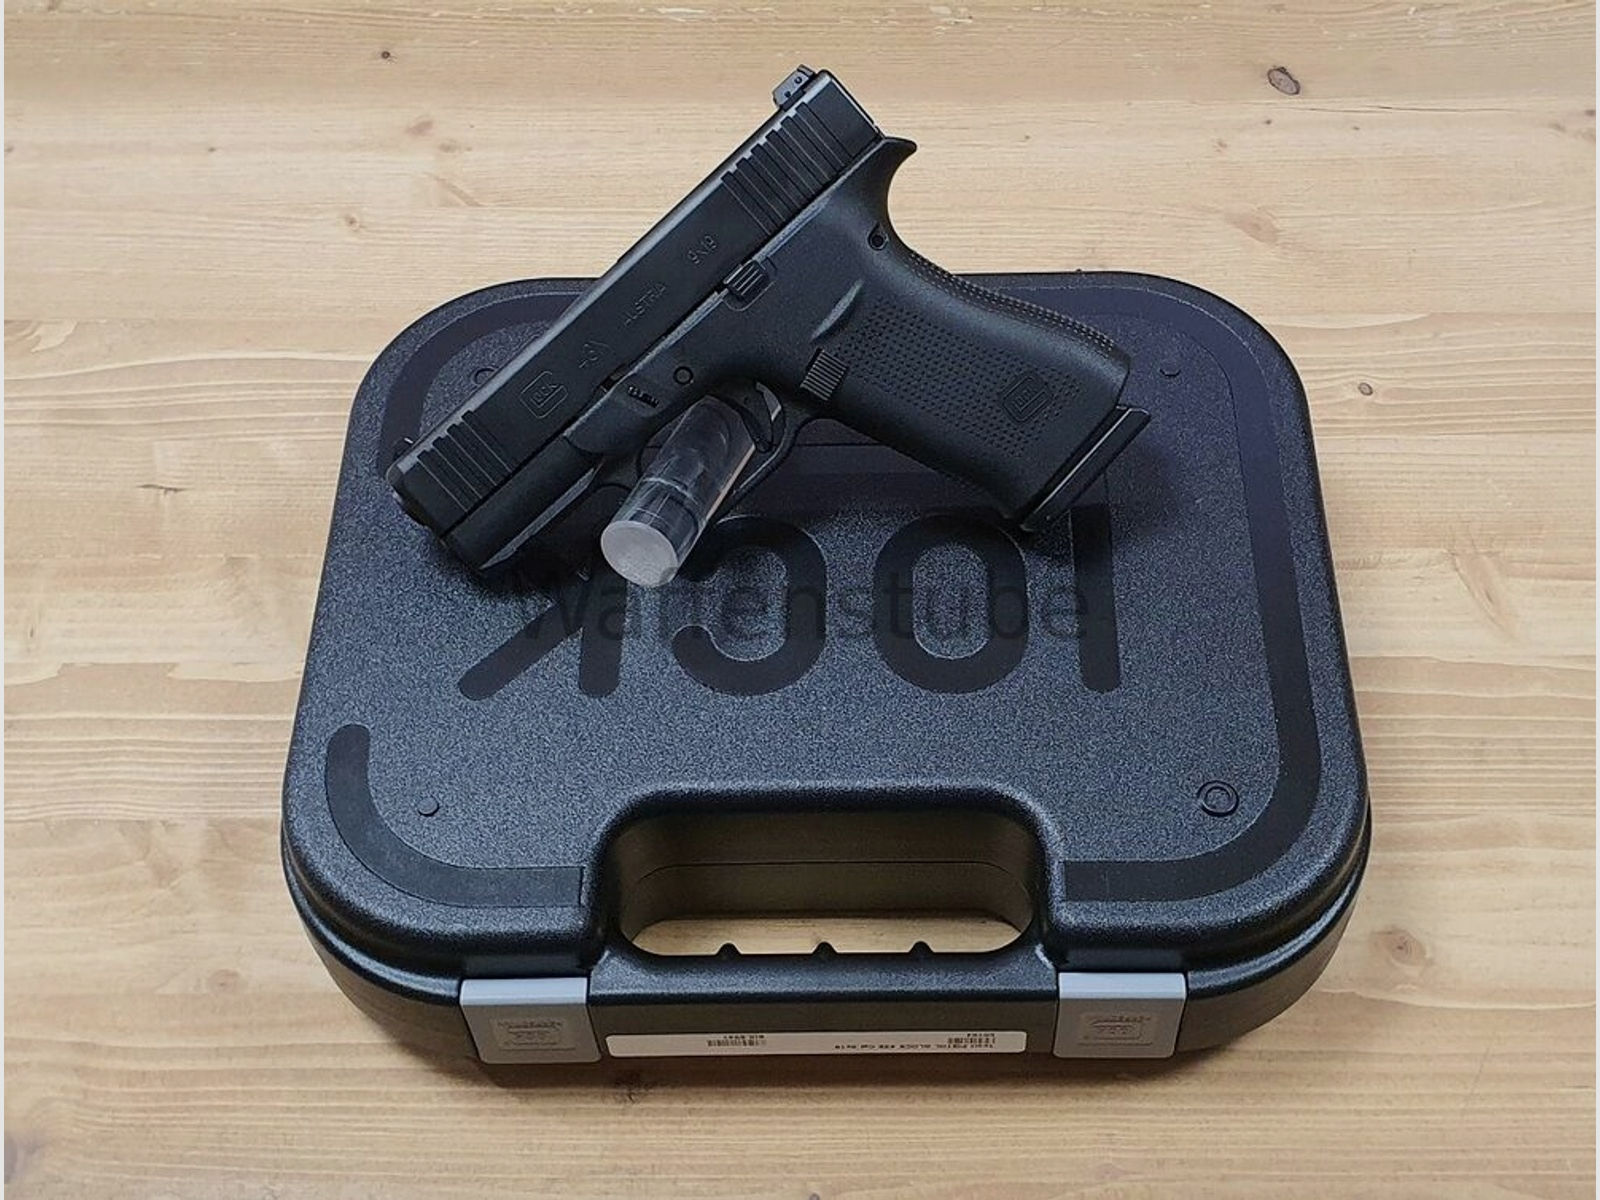 Glock	 43X R FS black